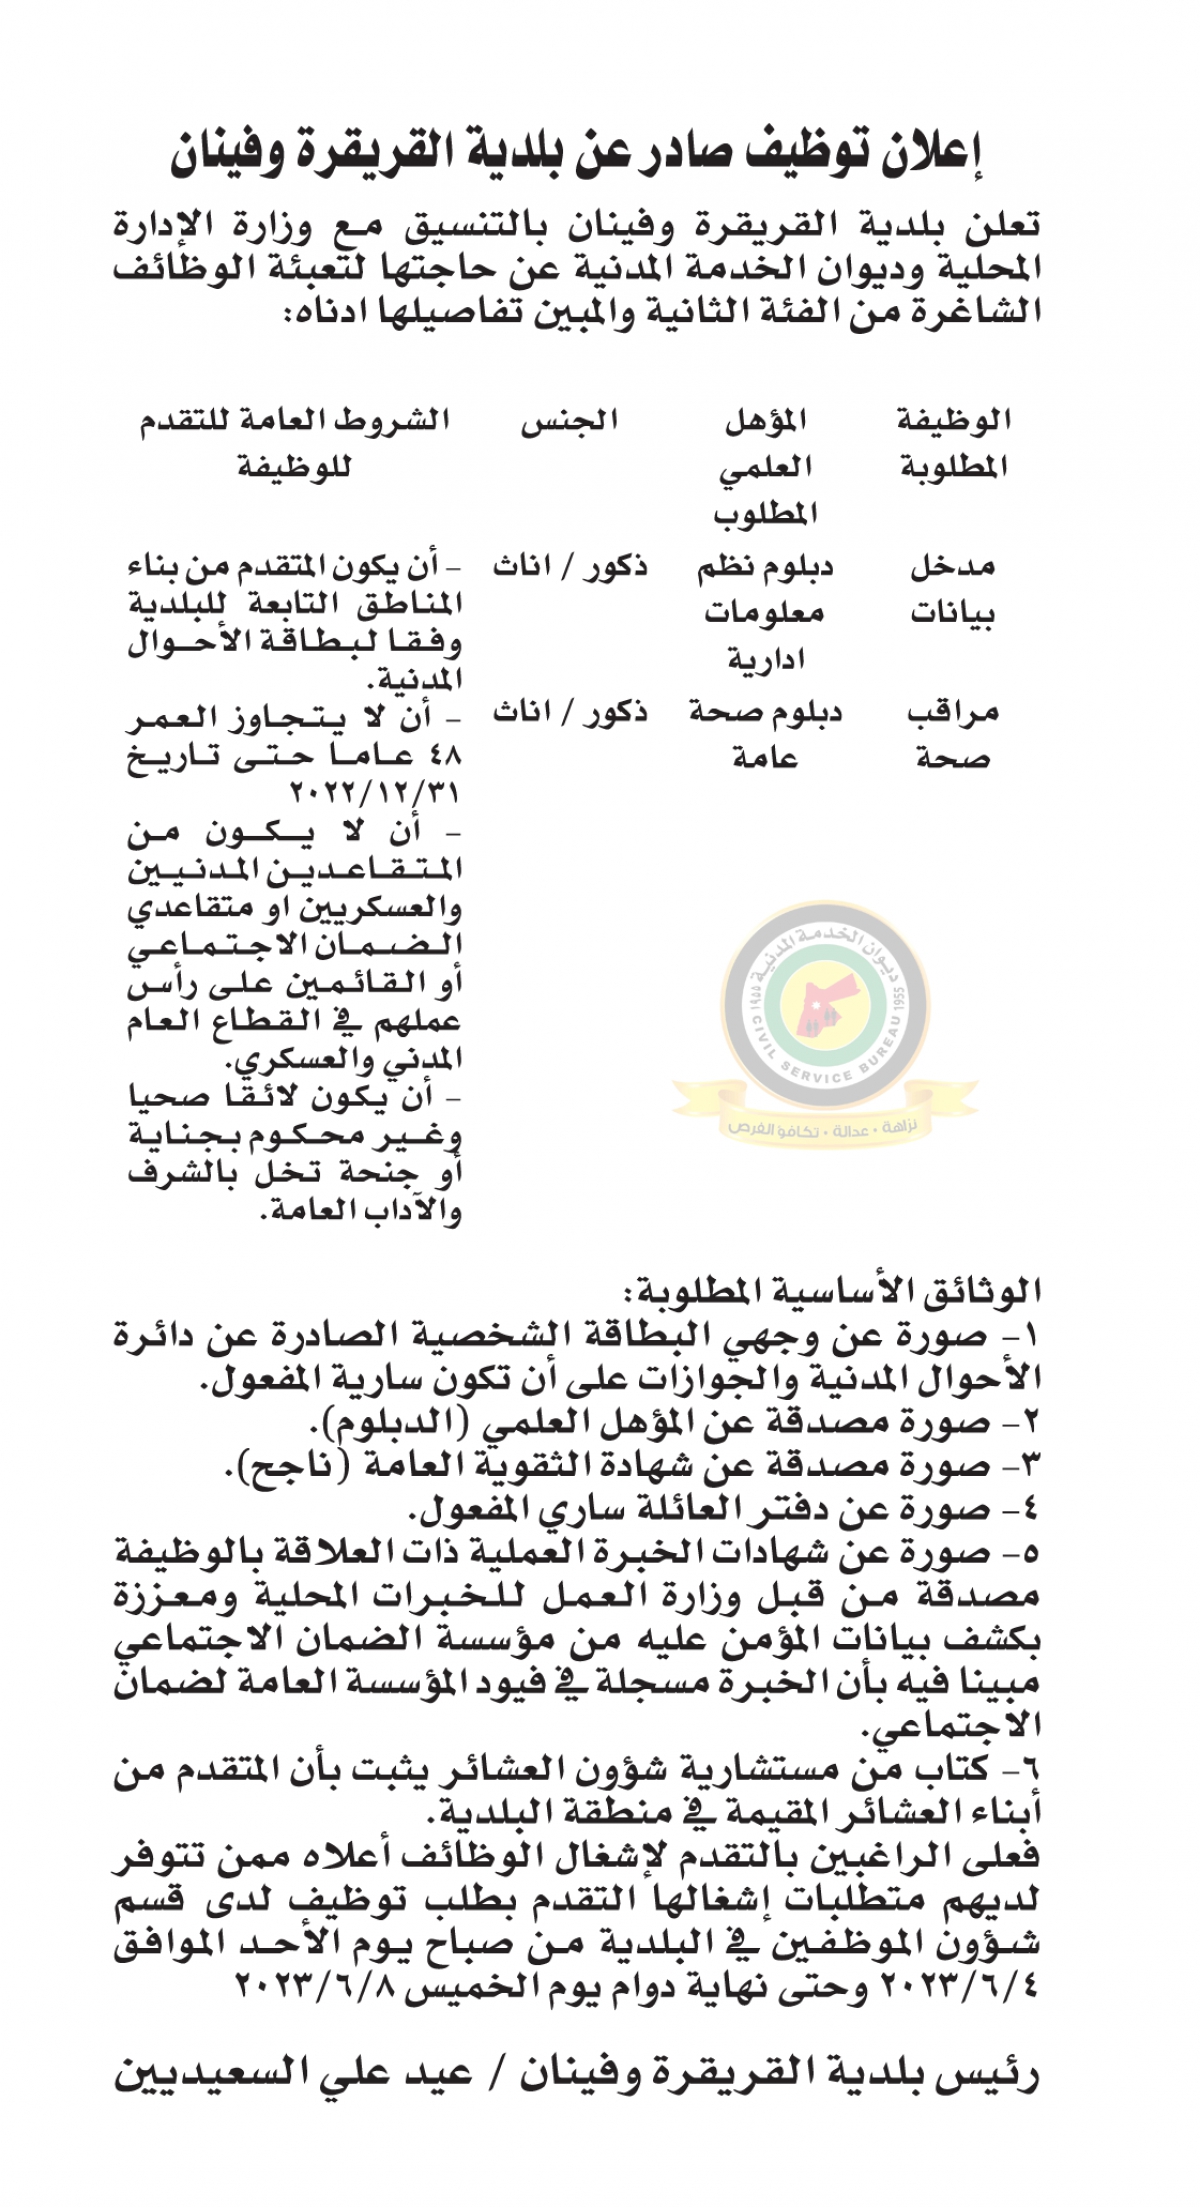 اعلان وظائف شاغرة بالفئة الثانية صادرعن بلدية القريقرة وفينان